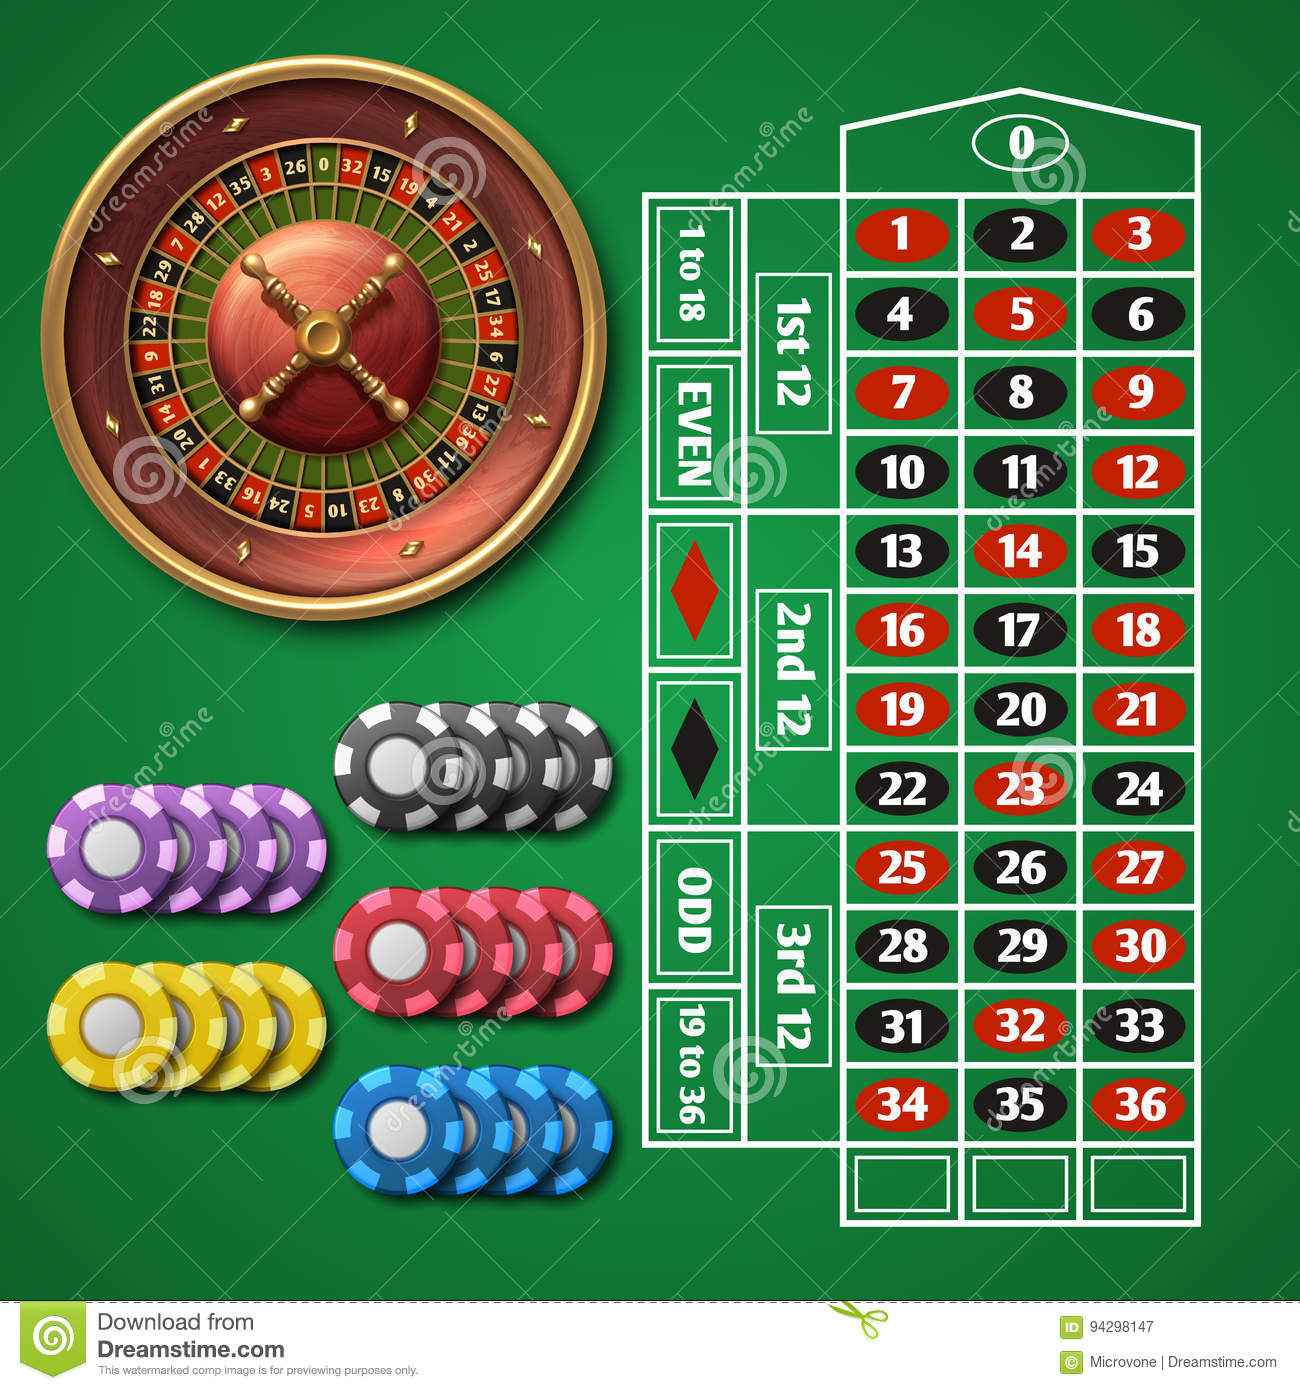 Casino online 10 minimum deposit